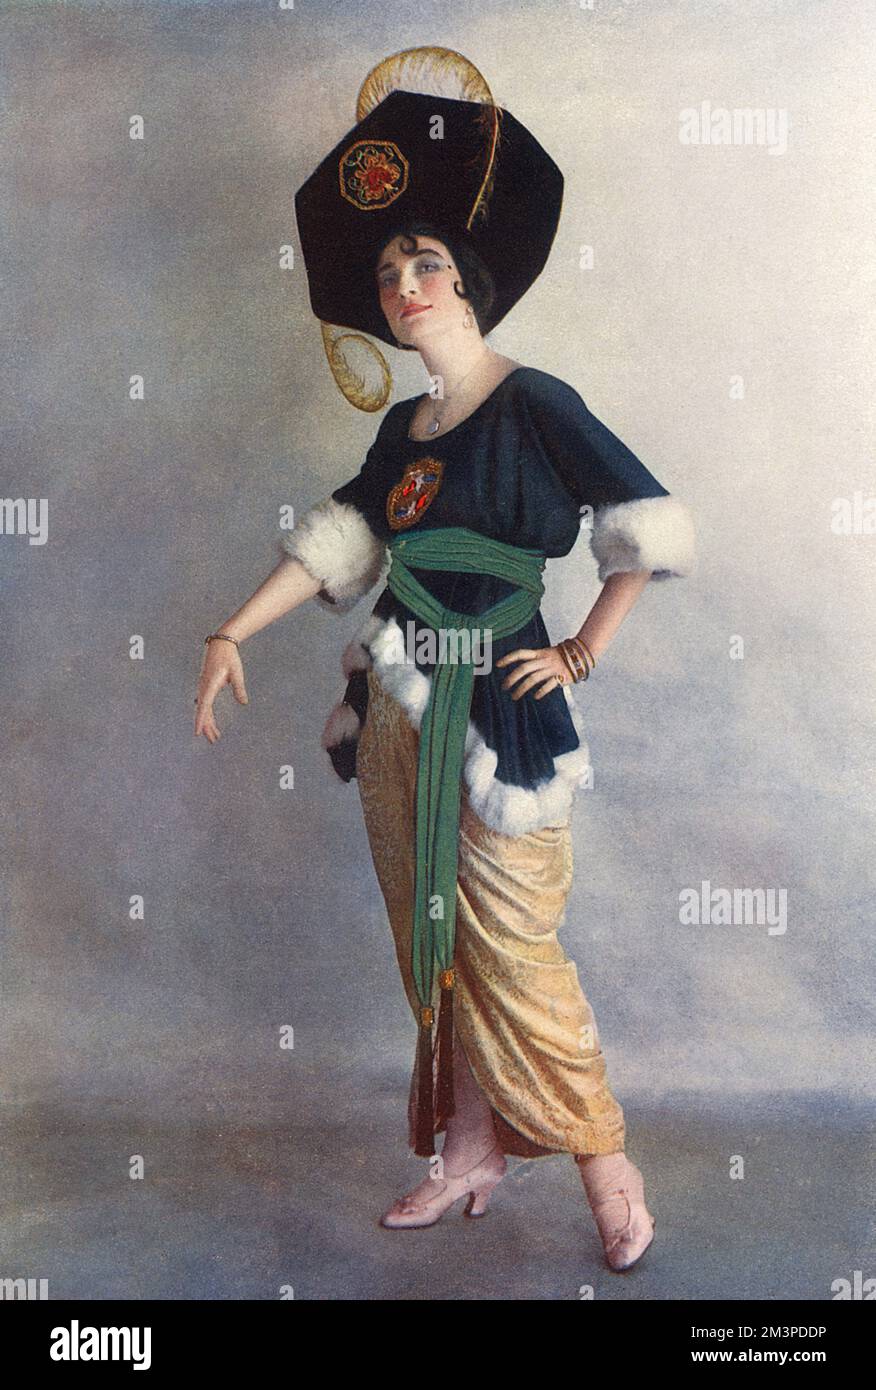 Farbfoto von Ethel Levey (1880-1955), amerikanische Schauspielerin und Sängerin, abgebildet in einem der Kostüme, die sie in der Theateraufführung trug: „Hullo Tango!“ Im Jahr 1914. Datum: 1914 Stockfoto